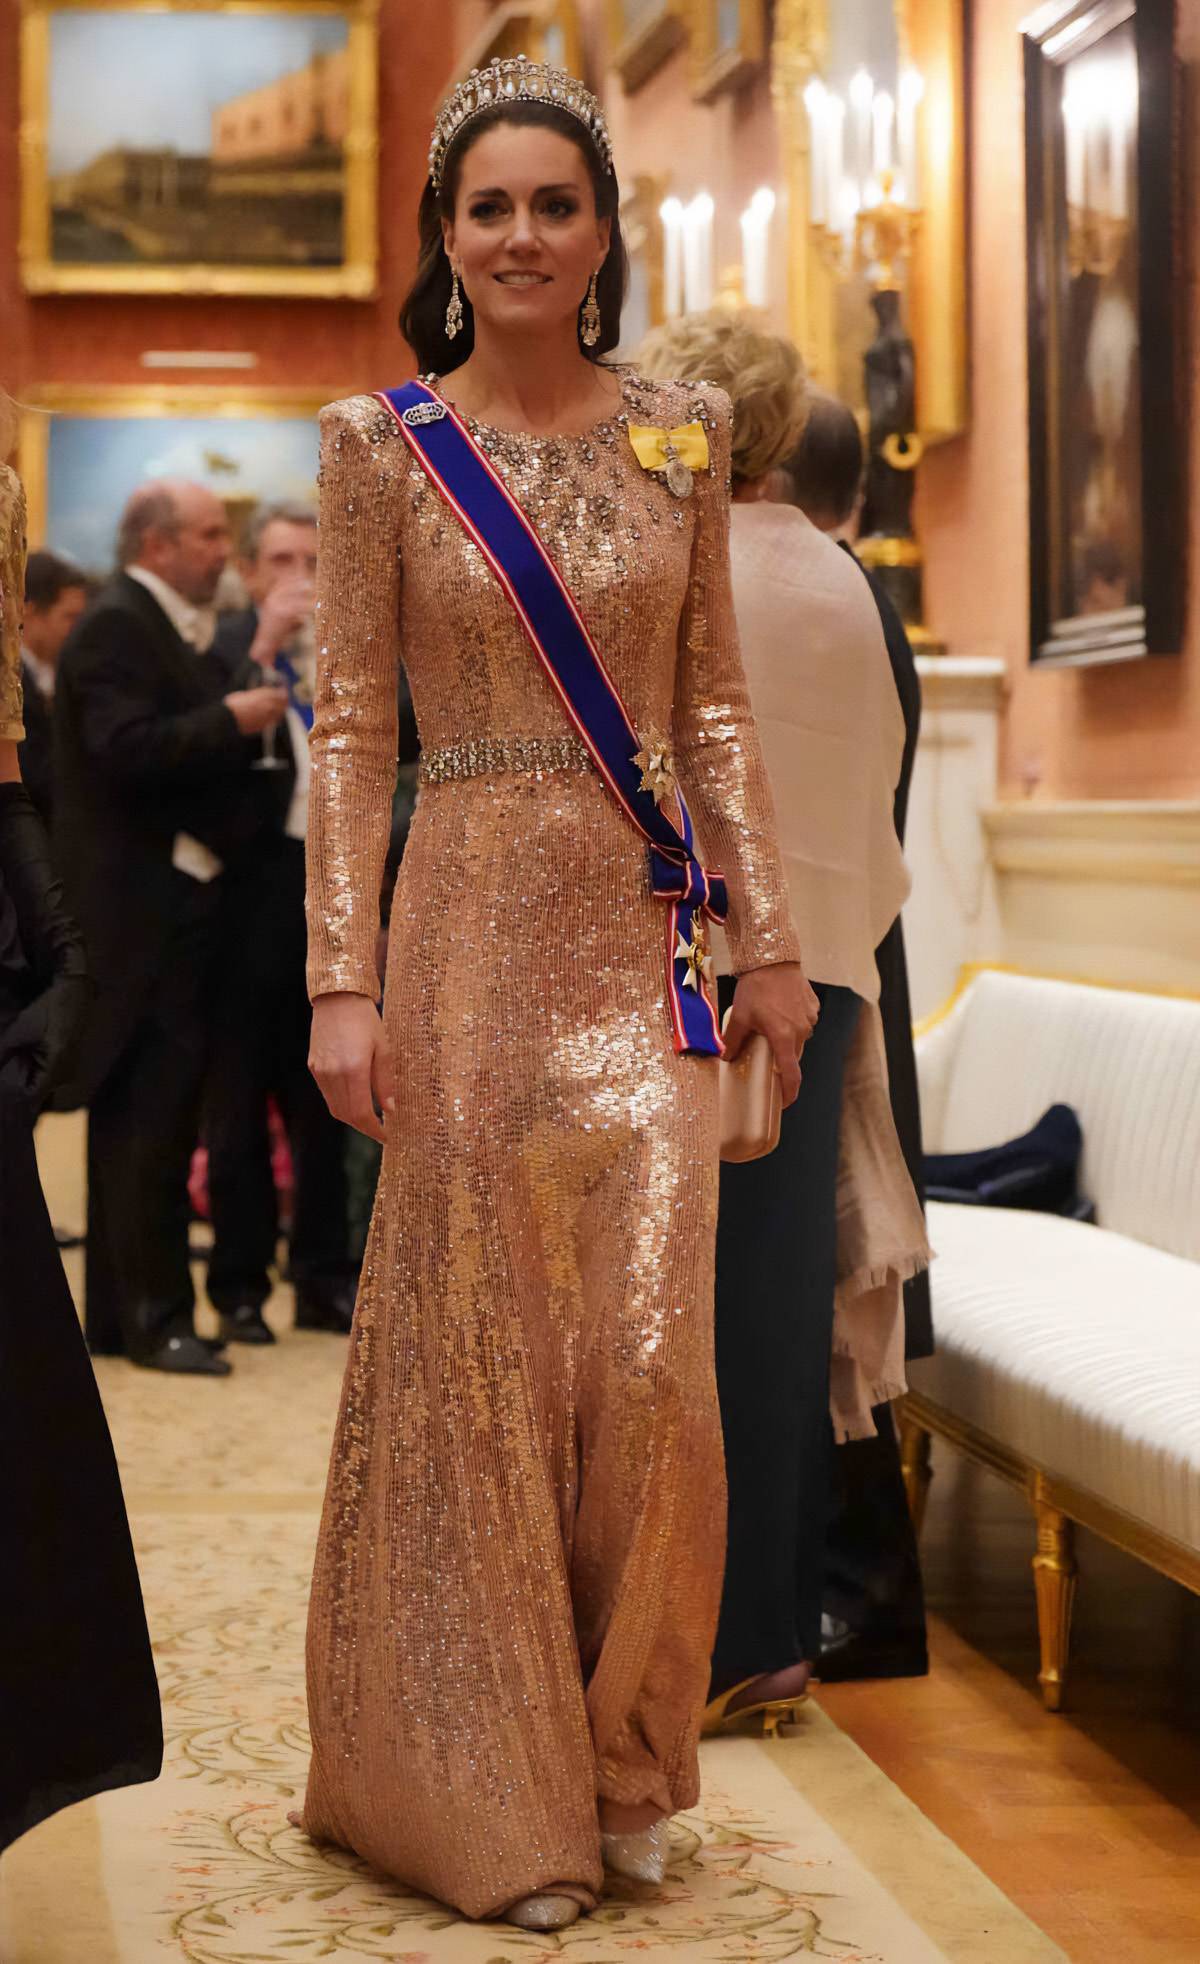 Księżna Kate w cekinowej sukni Jenny Packham. Księżna Kate pojawiła się na przyjęciu w pałacu Buckingham w cekinowej sukni projektu Jenny Packham i diamentowej tiarze Lady Di.